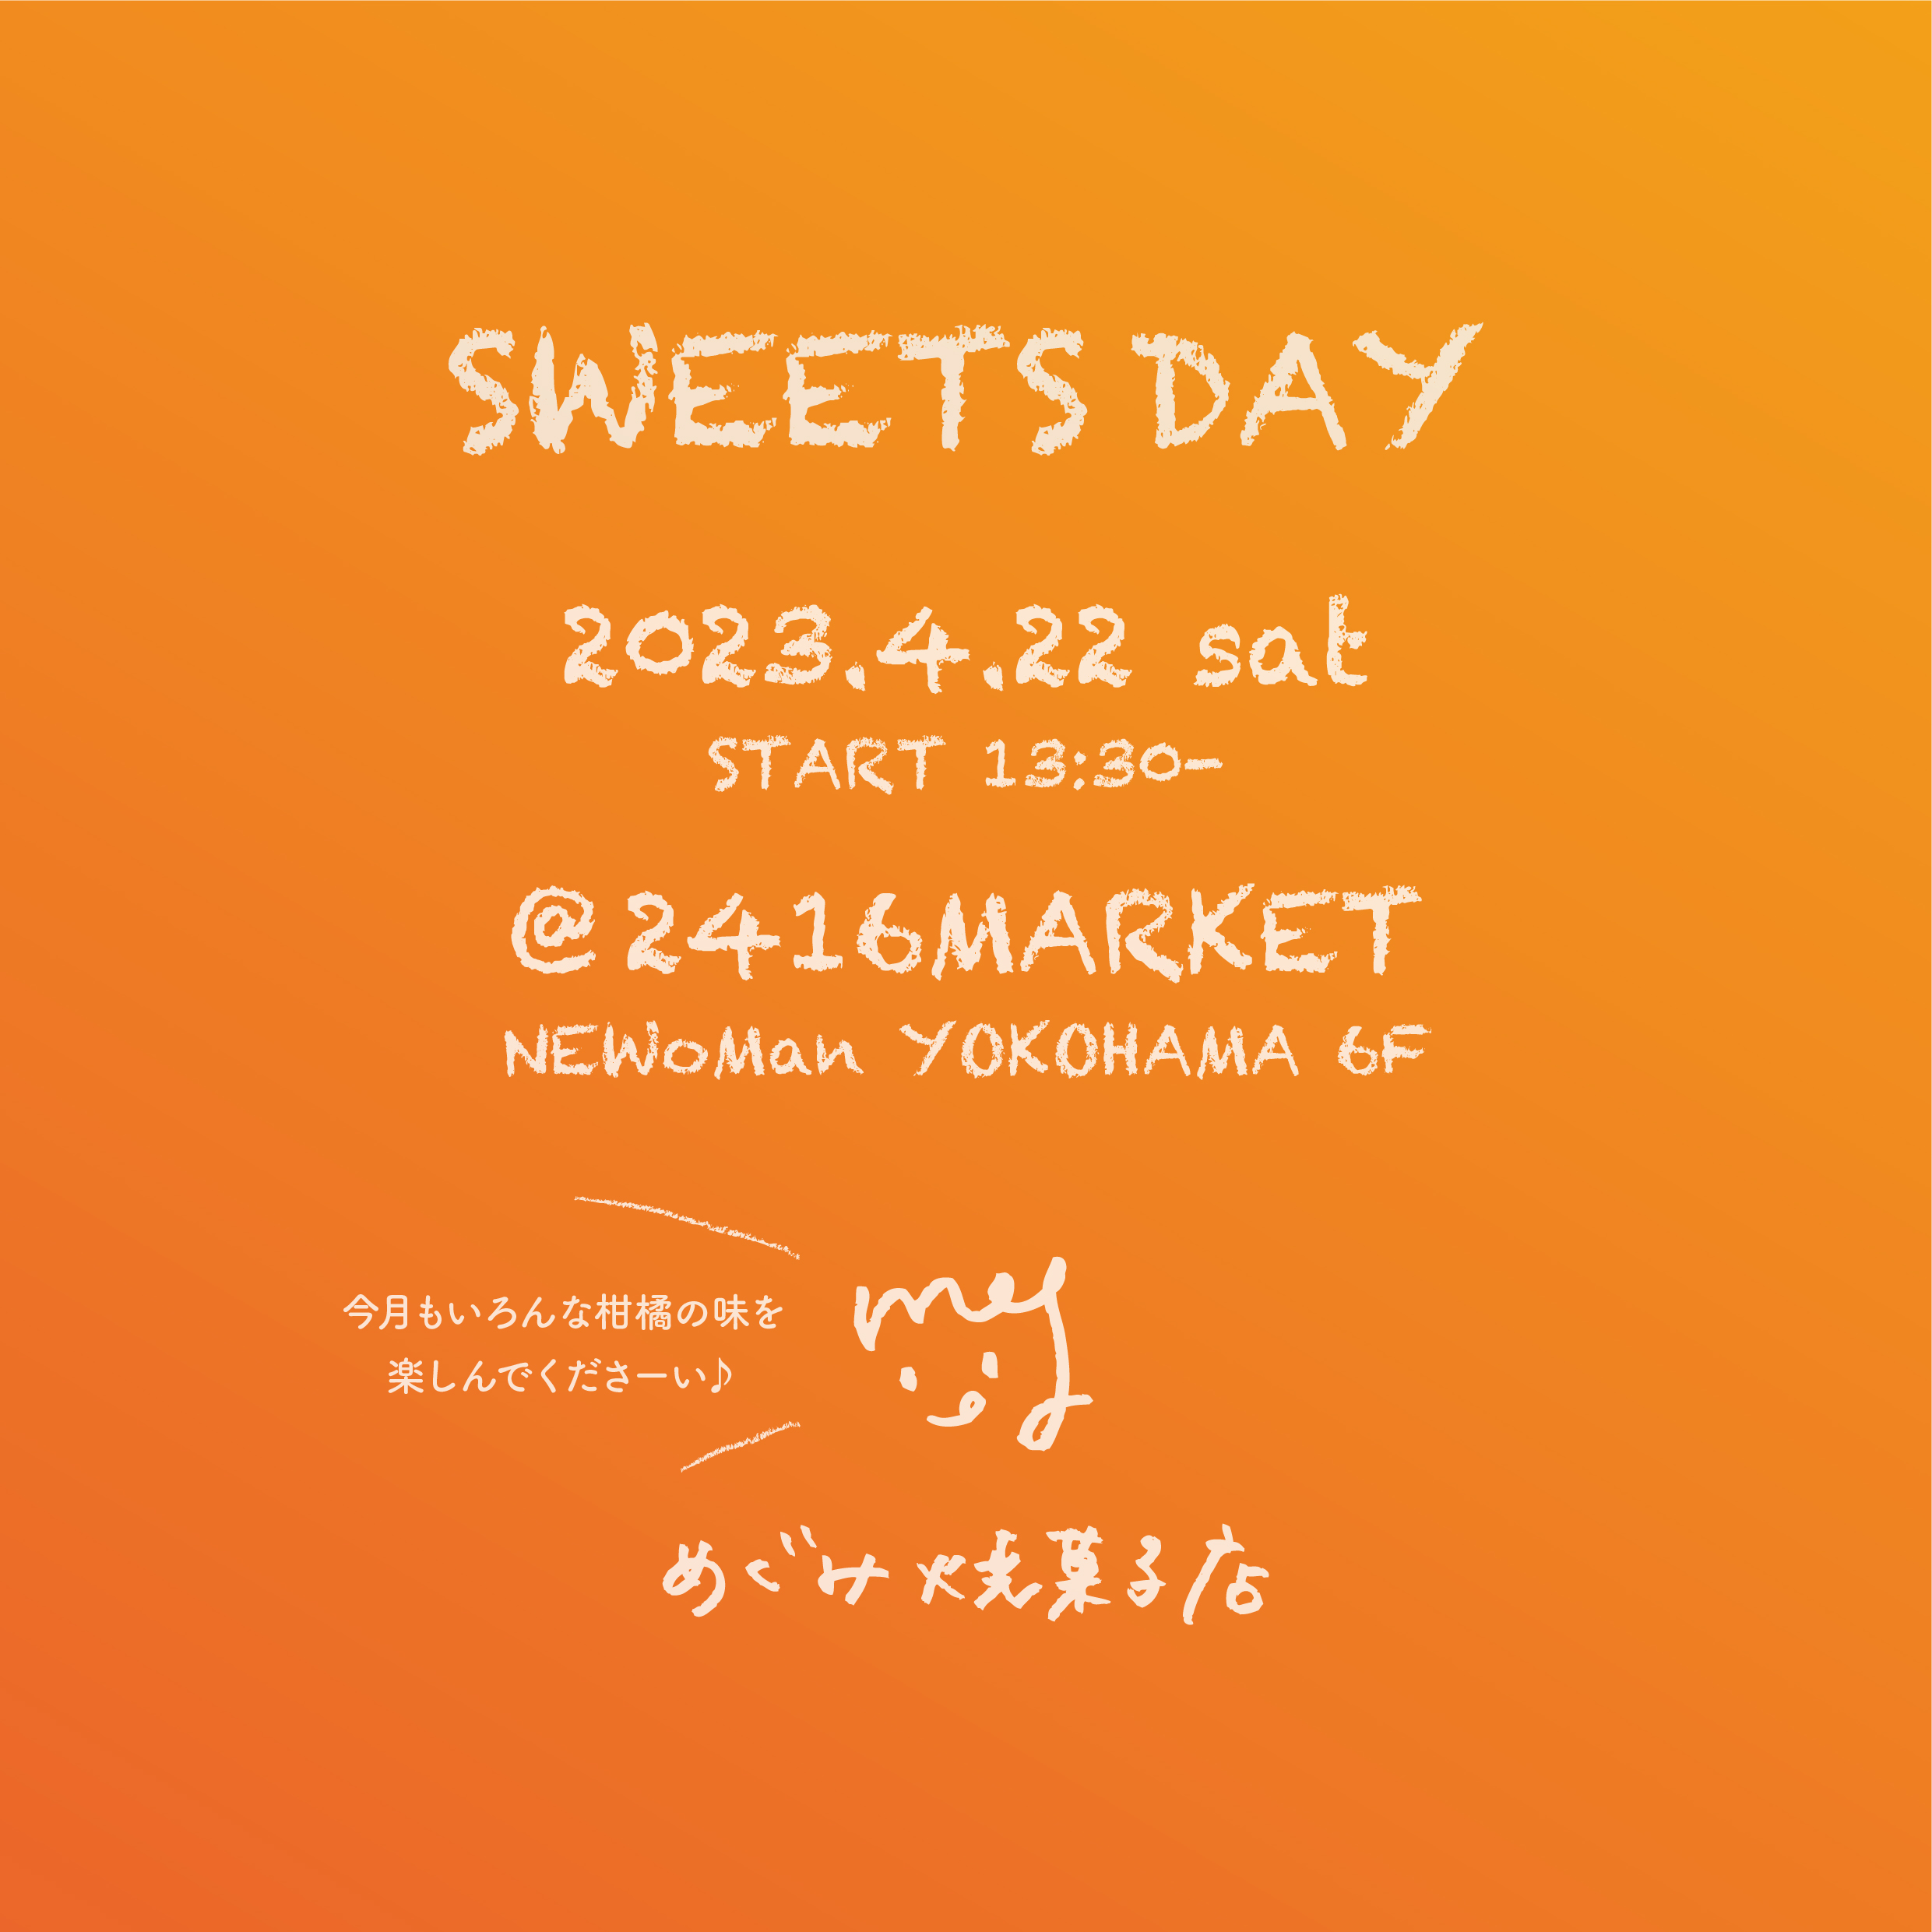 2023/4/22開催 SWEETS DAY@2416MARKET のご案内 | めぐみ焼菓子店